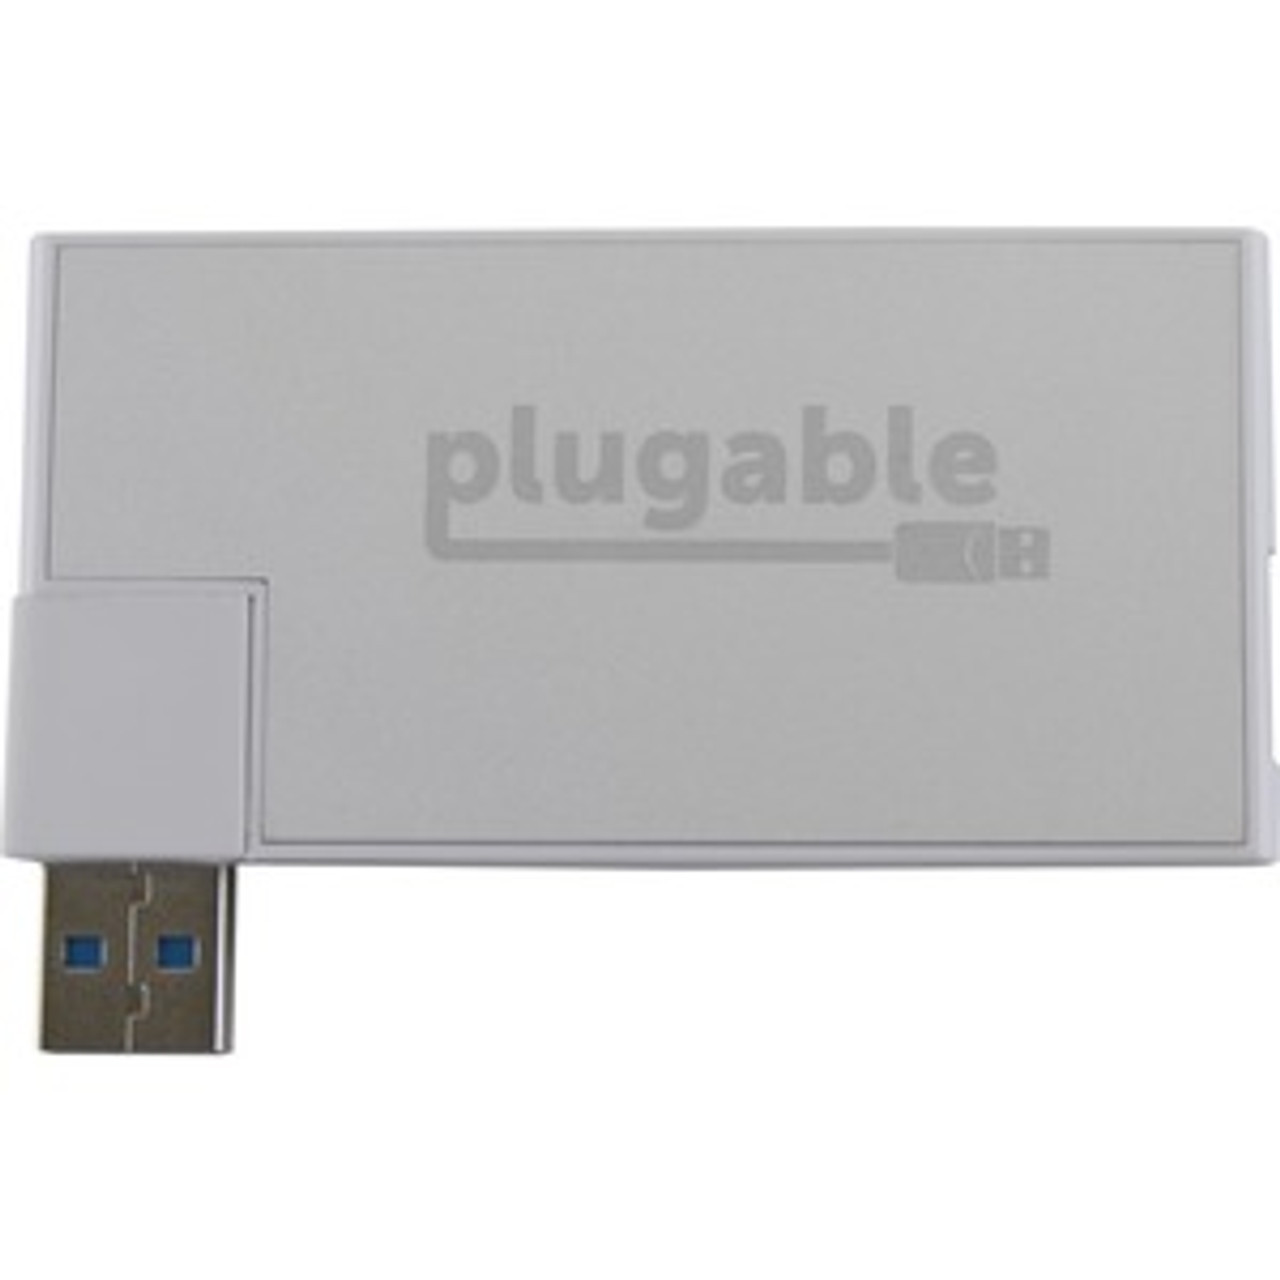 PLG-USB3-HUB4R